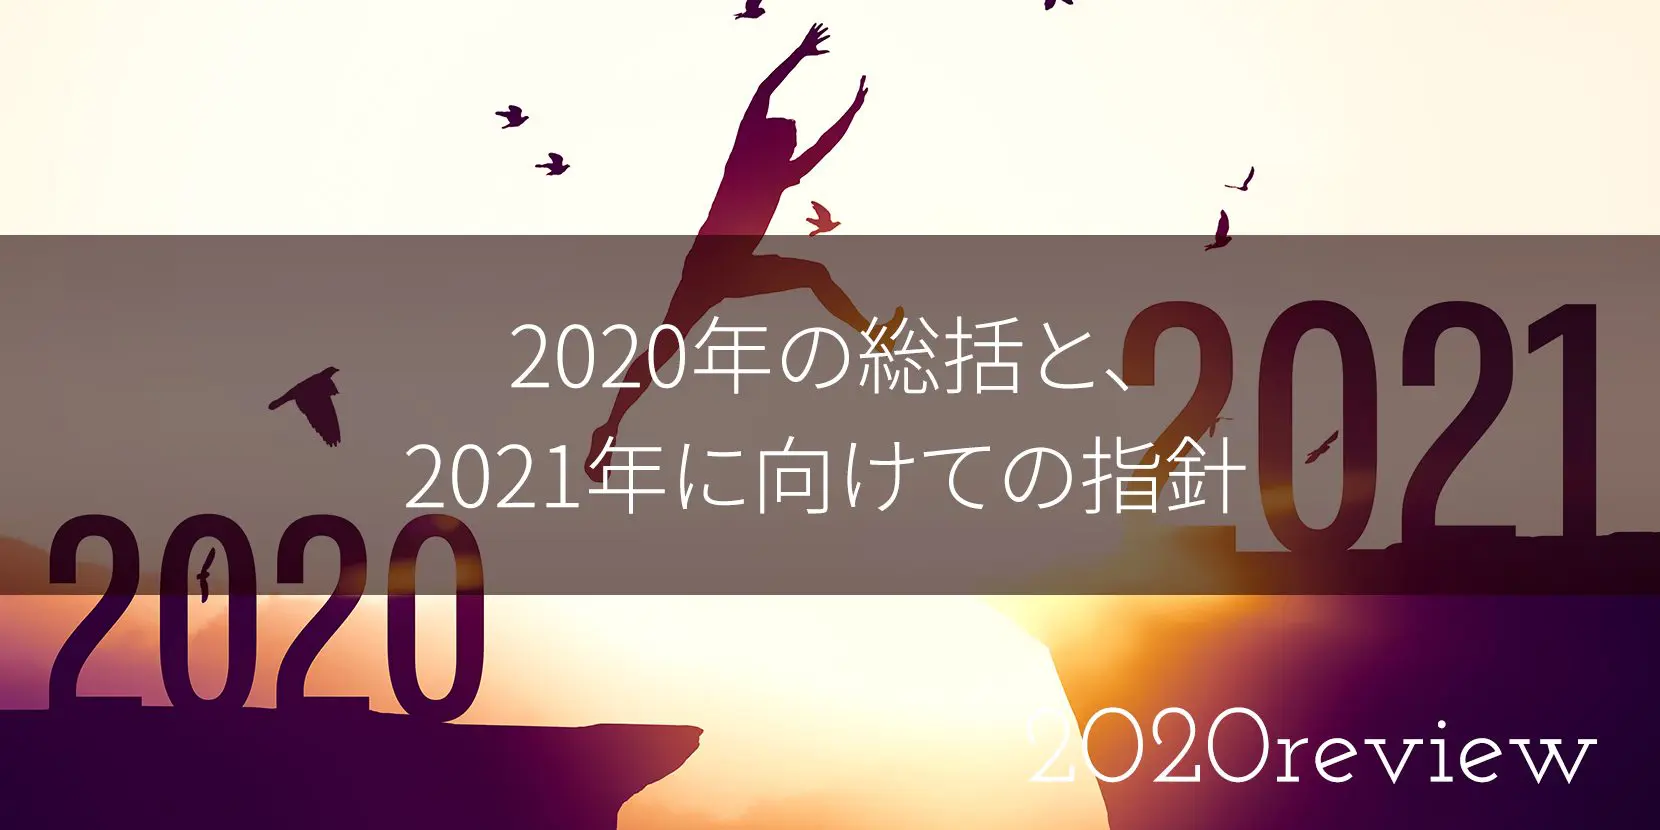 2020年の総括と、2021年に向けての指針、インボイス制度の開始に向けて